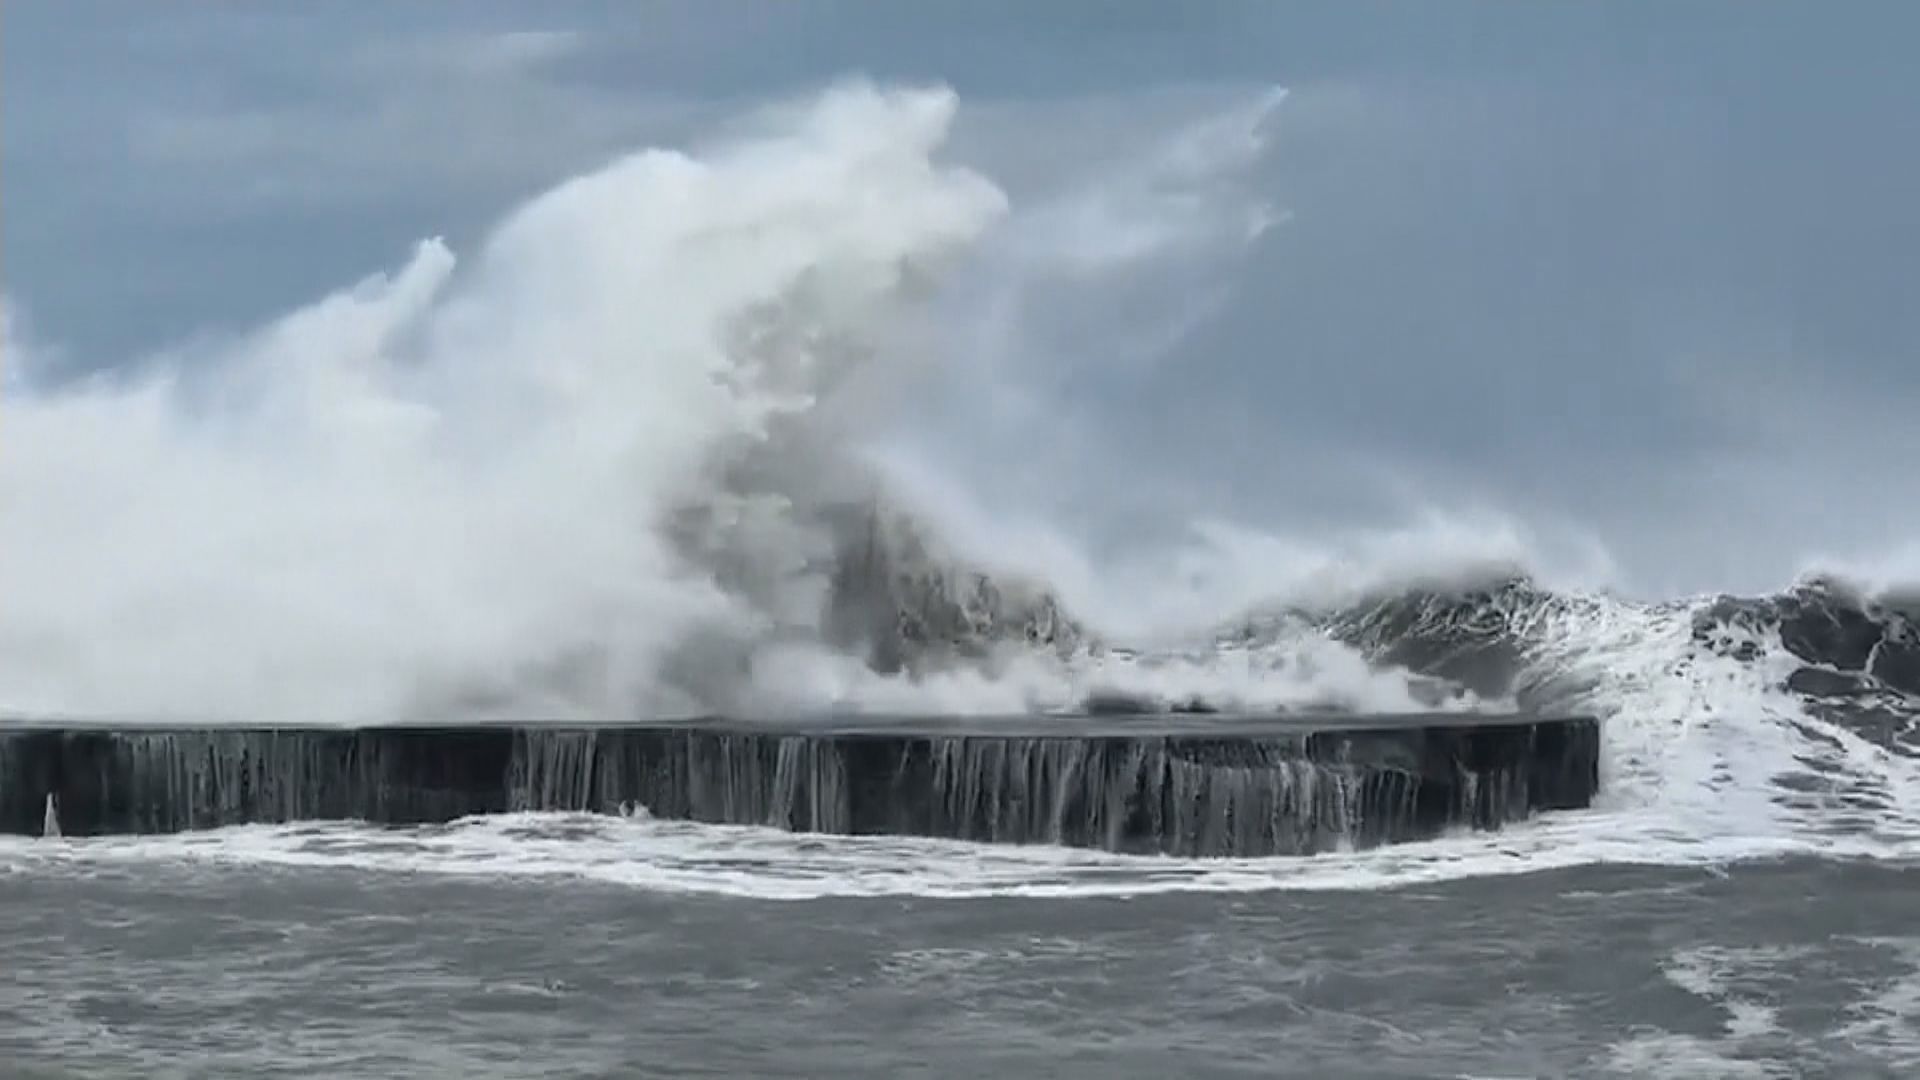 卡努持續為沖繩帶來狂風暴雨 正緩慢趨向台灣東北部近海